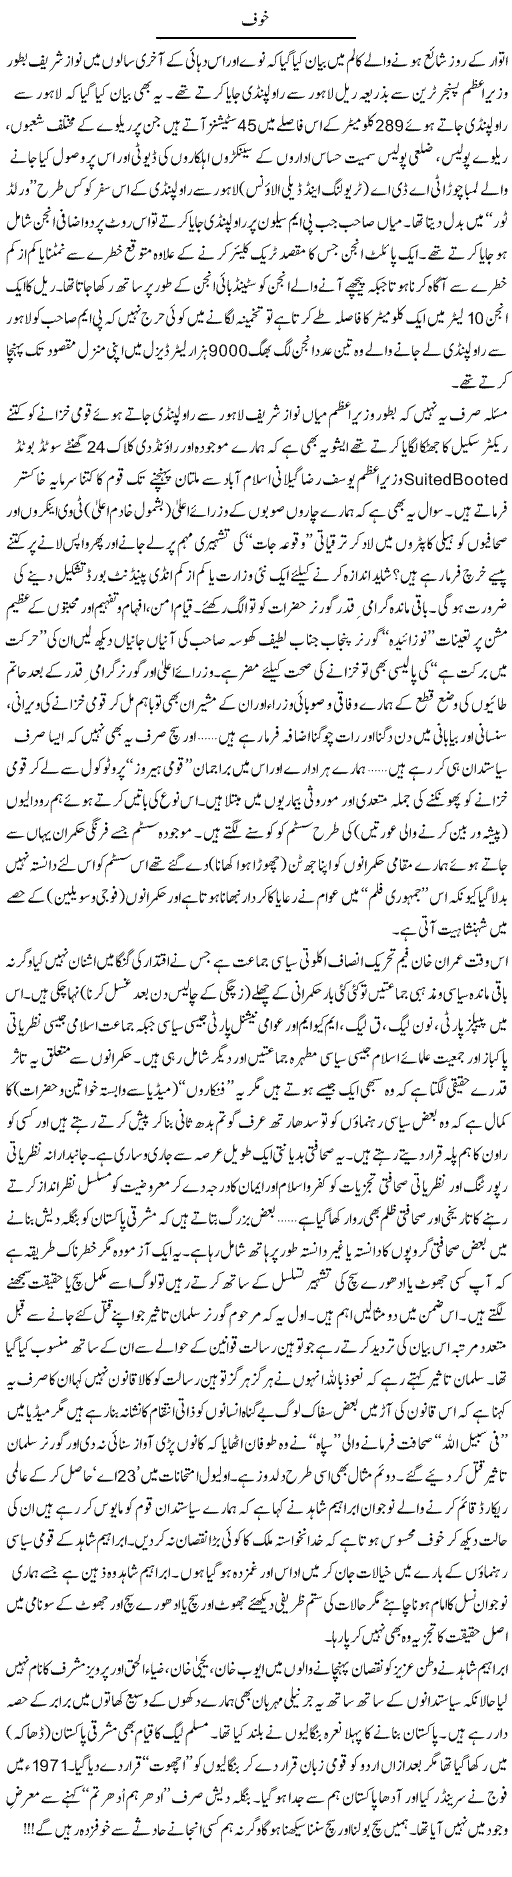 Nawaz Sharif Exposed Express Column Tahir Sarwar 31 January 2011